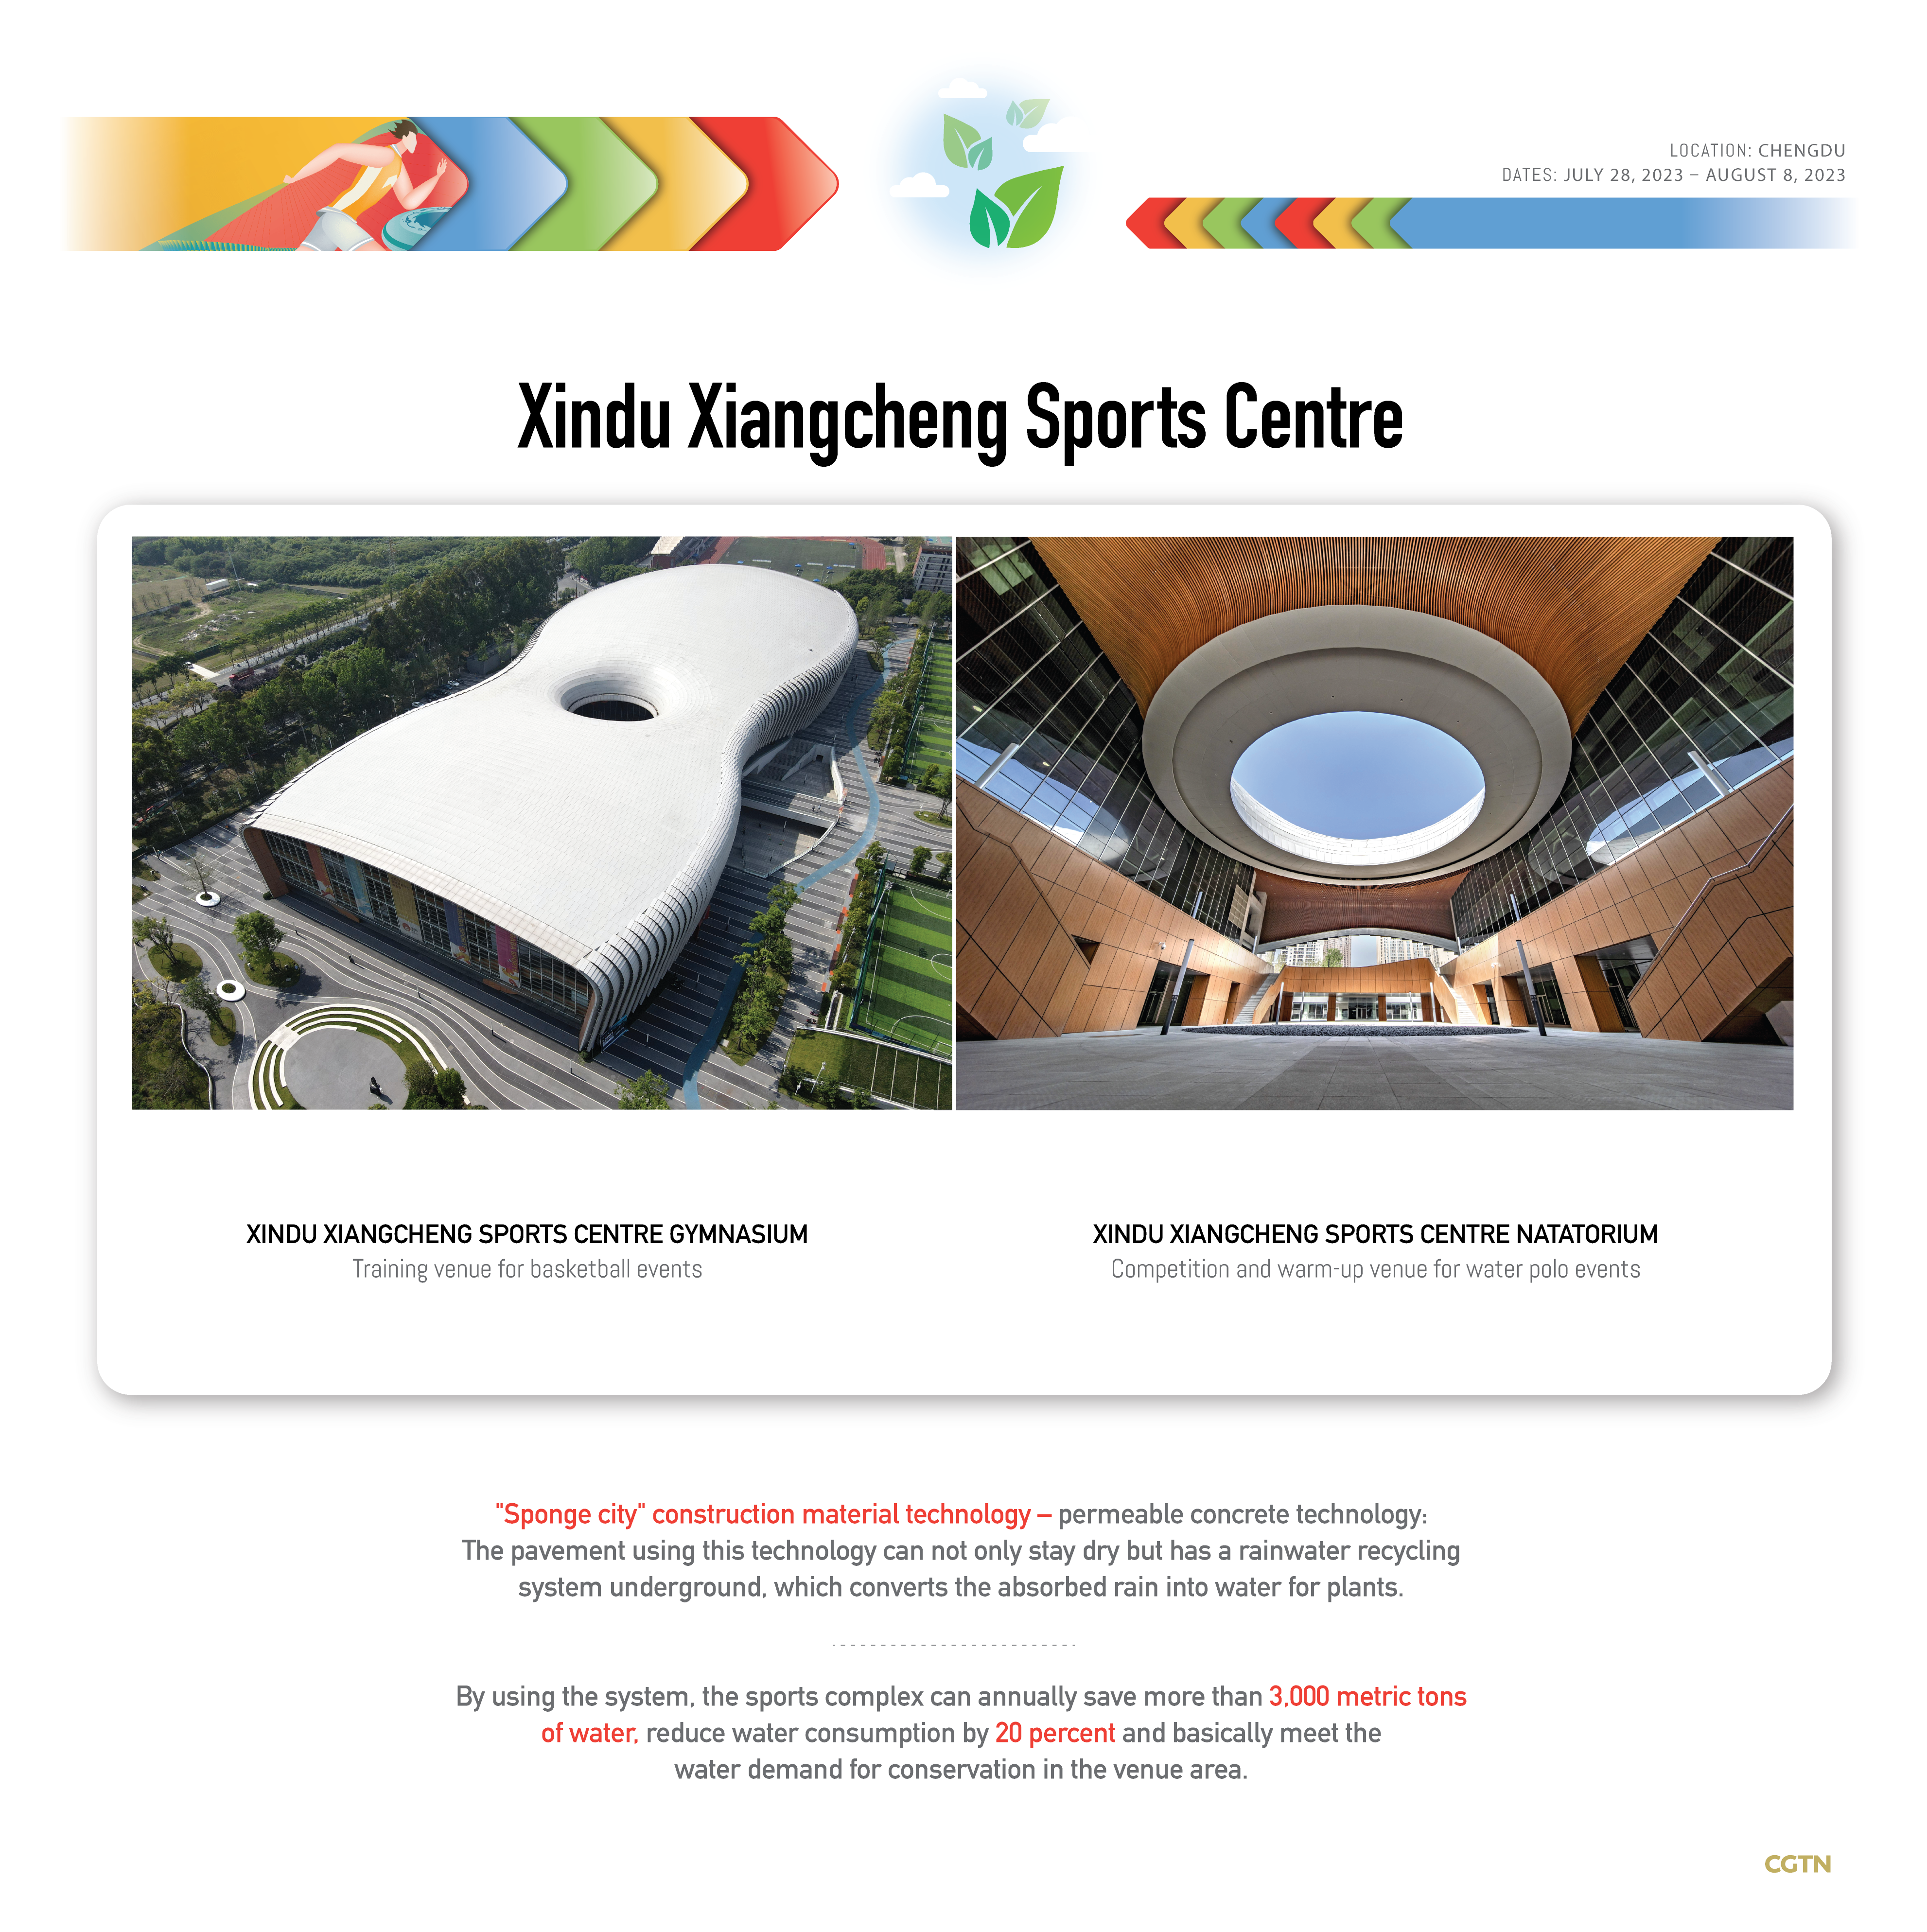 Unboxing green Universiade: Xindu Xiangcheng Sports Centre